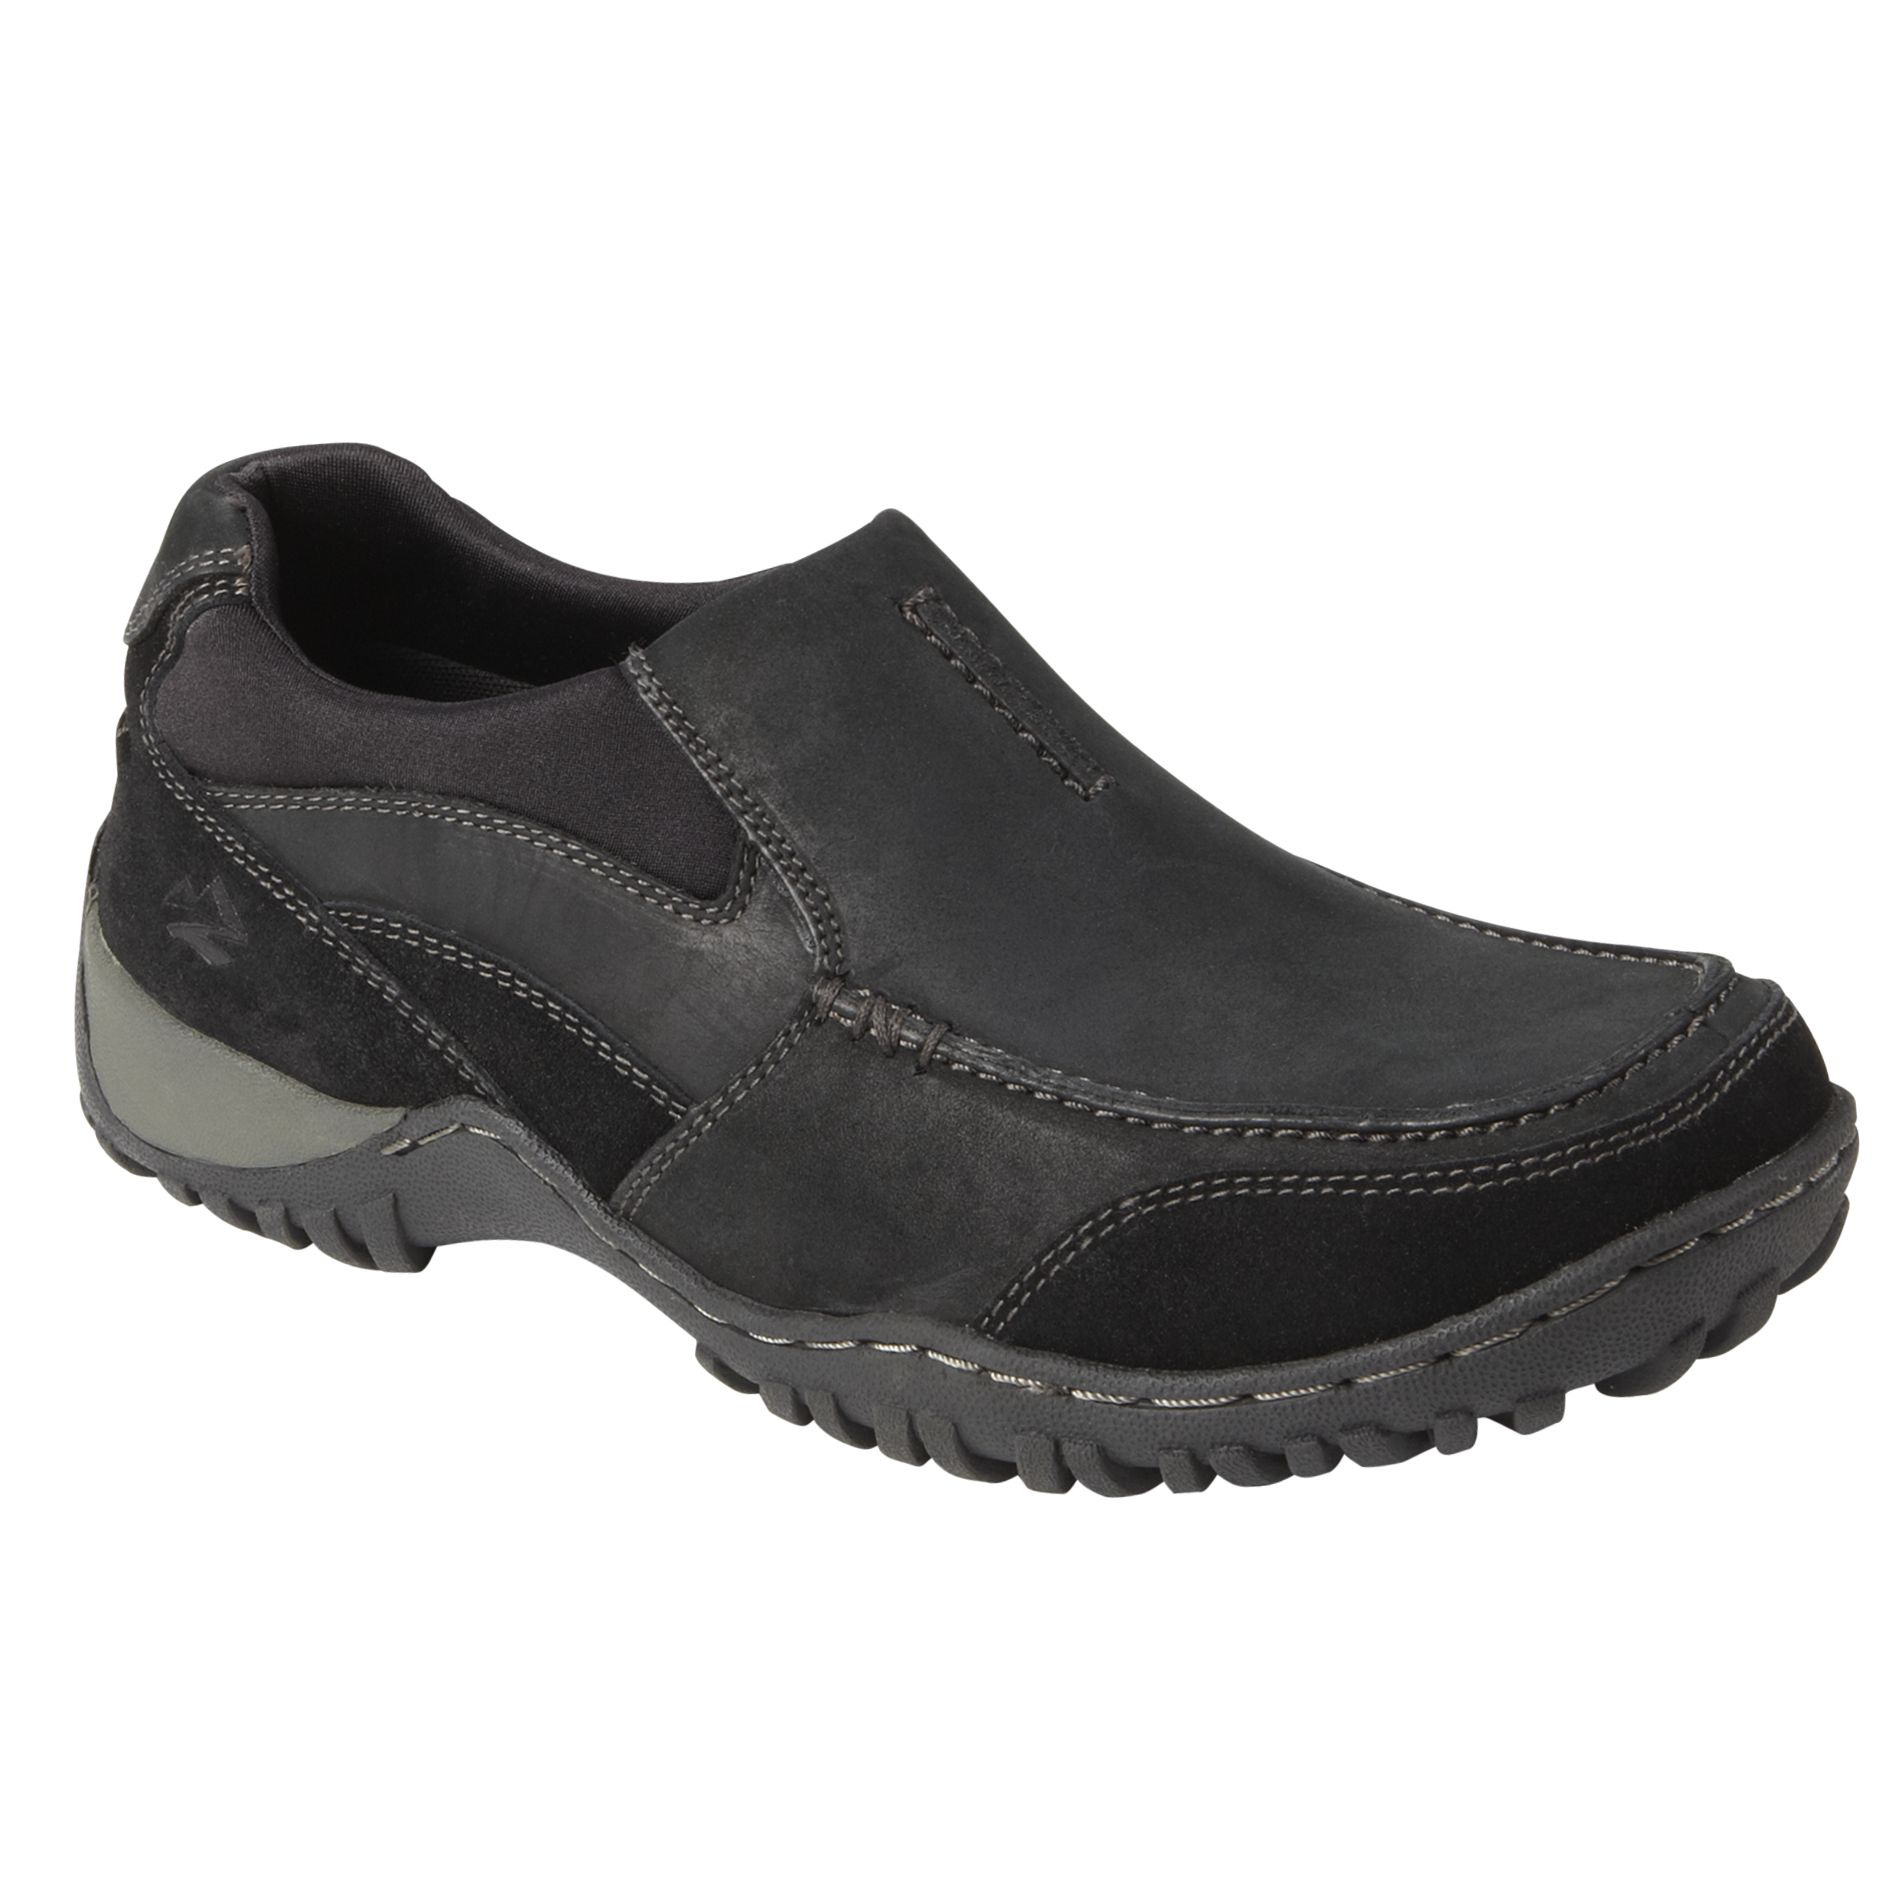 Nunn Bush Men's Portage Casual Slipon Shoe - Black